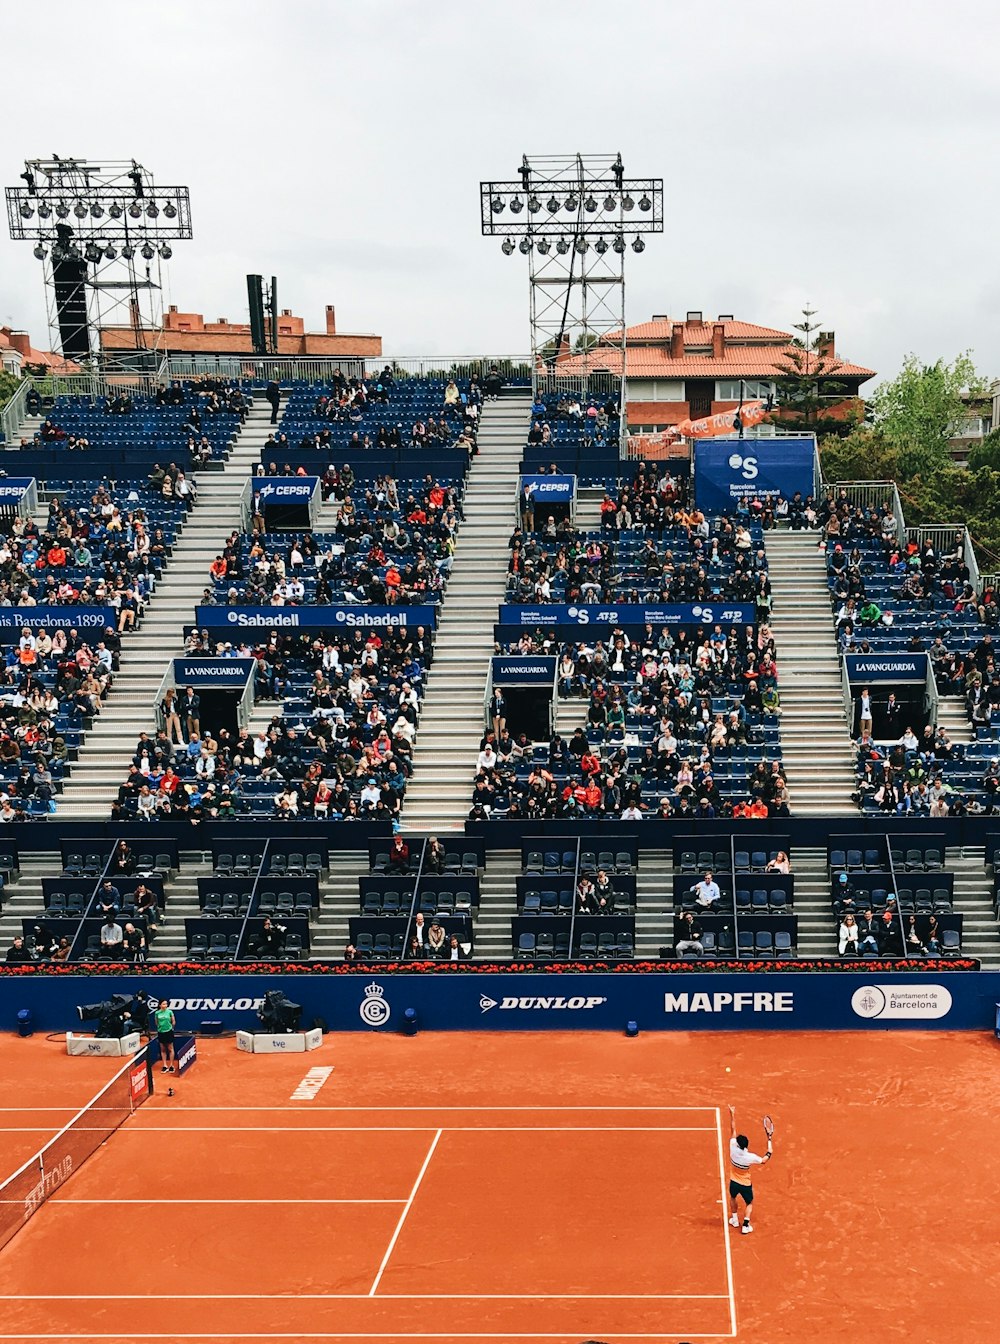 persone sedute sulle gradinate mentre guardano la partita di tennis sull'erba durante il giorno